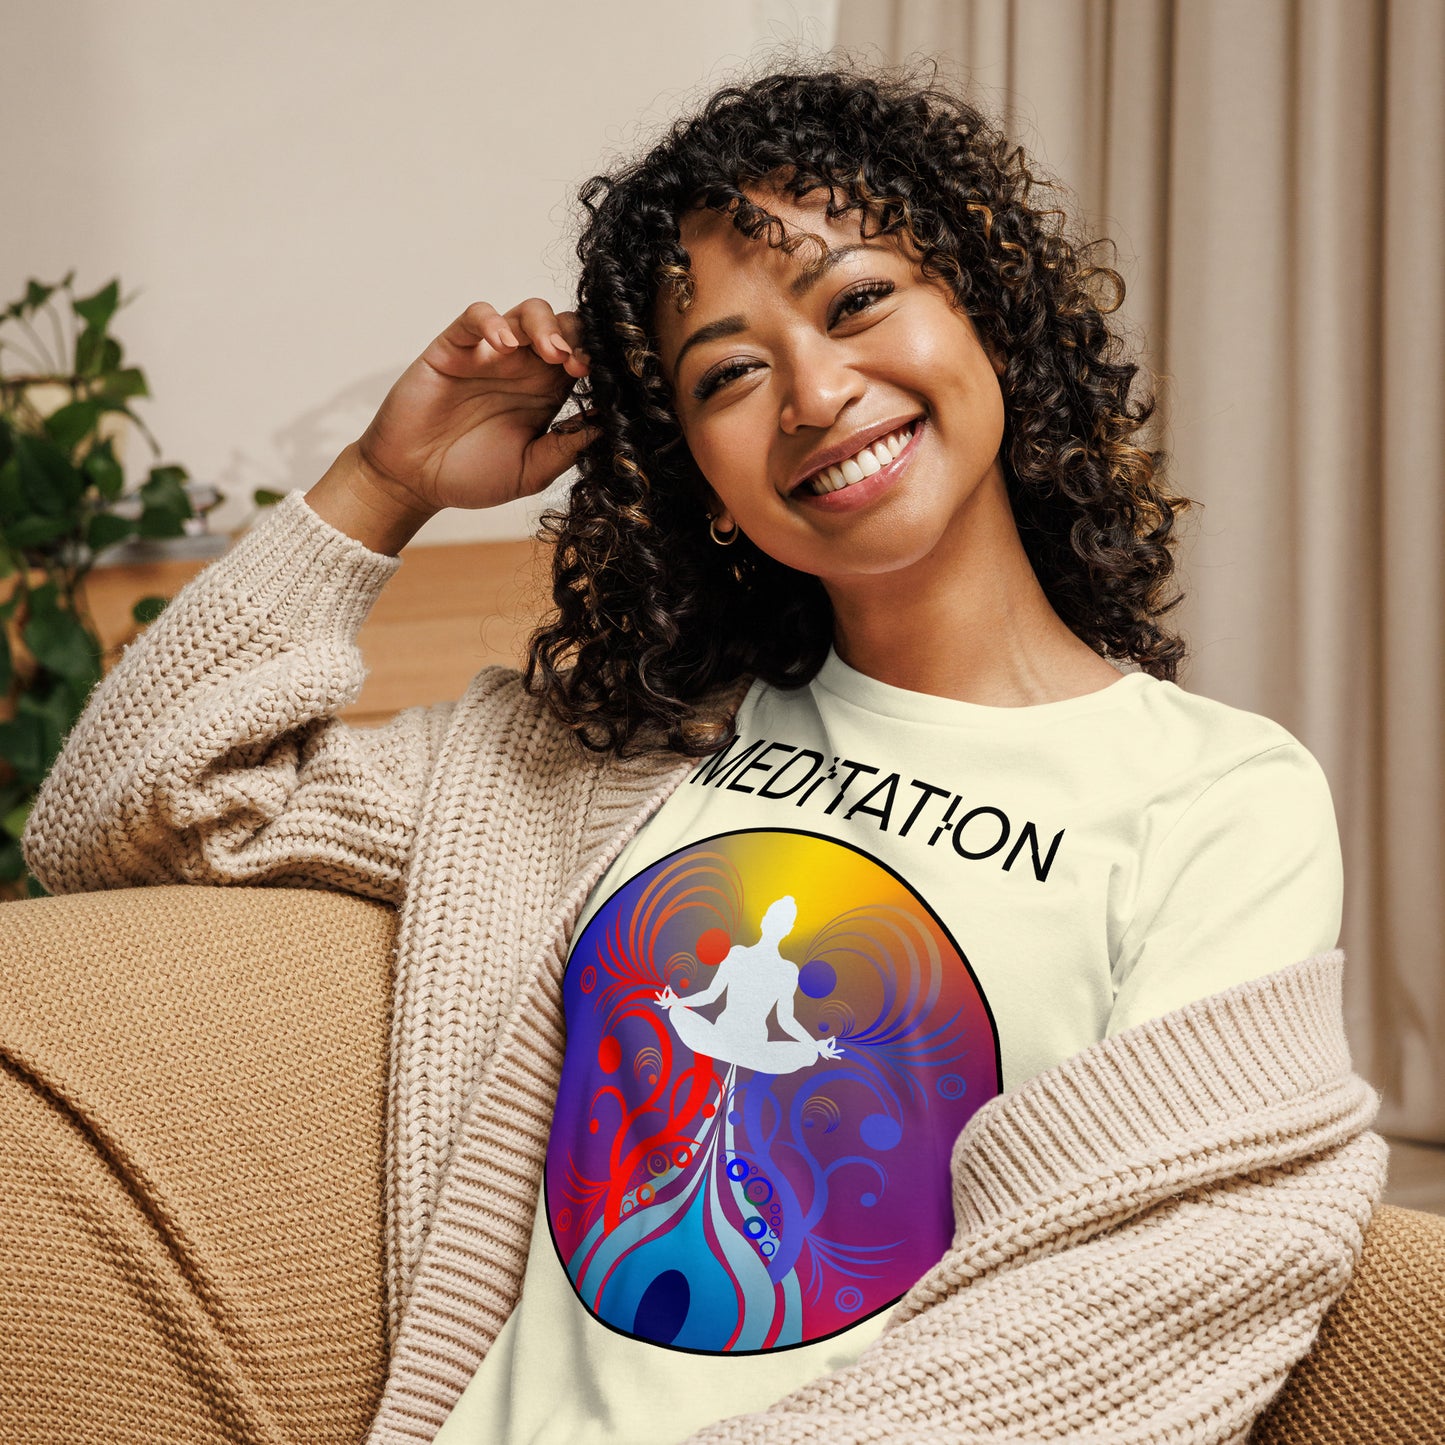 "Meditation" Women's Relaxed T-Shirt